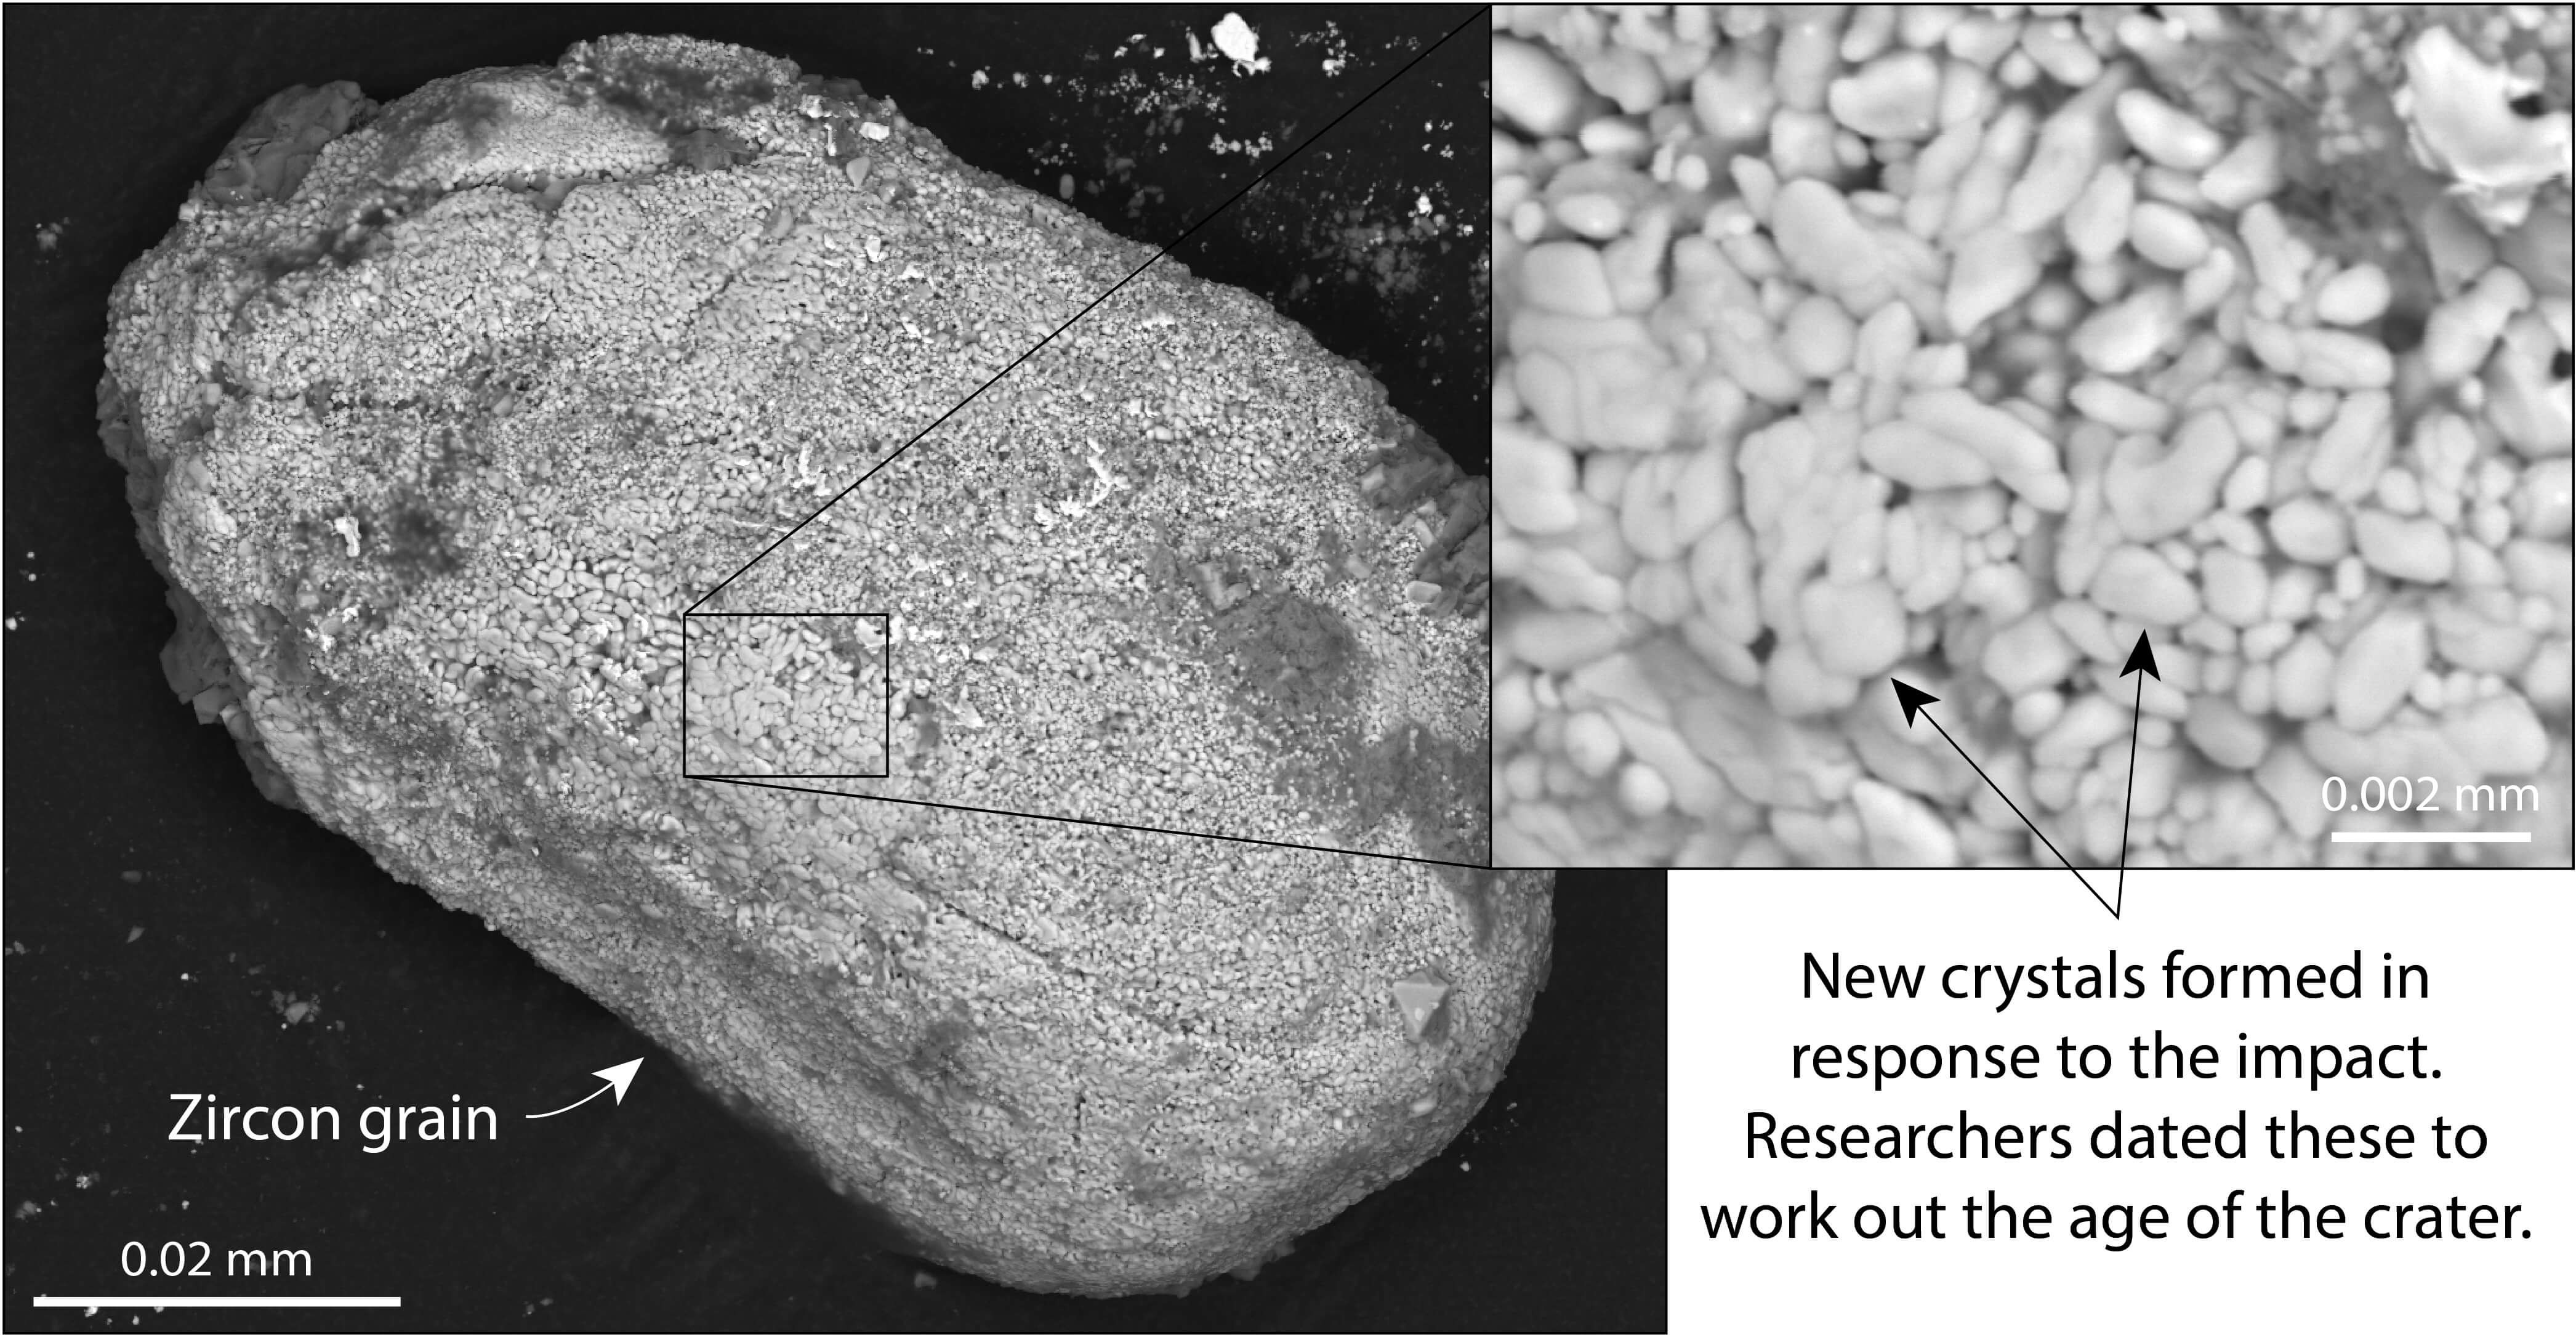 Cristais de zirconita contém evidências de diversos eventos ocorridos no Planeta, por isso cientistas escolheram analisar esse mineral para datar a cratera. (Foto: Gavin Kenny, Swedish Museum of Natural History)